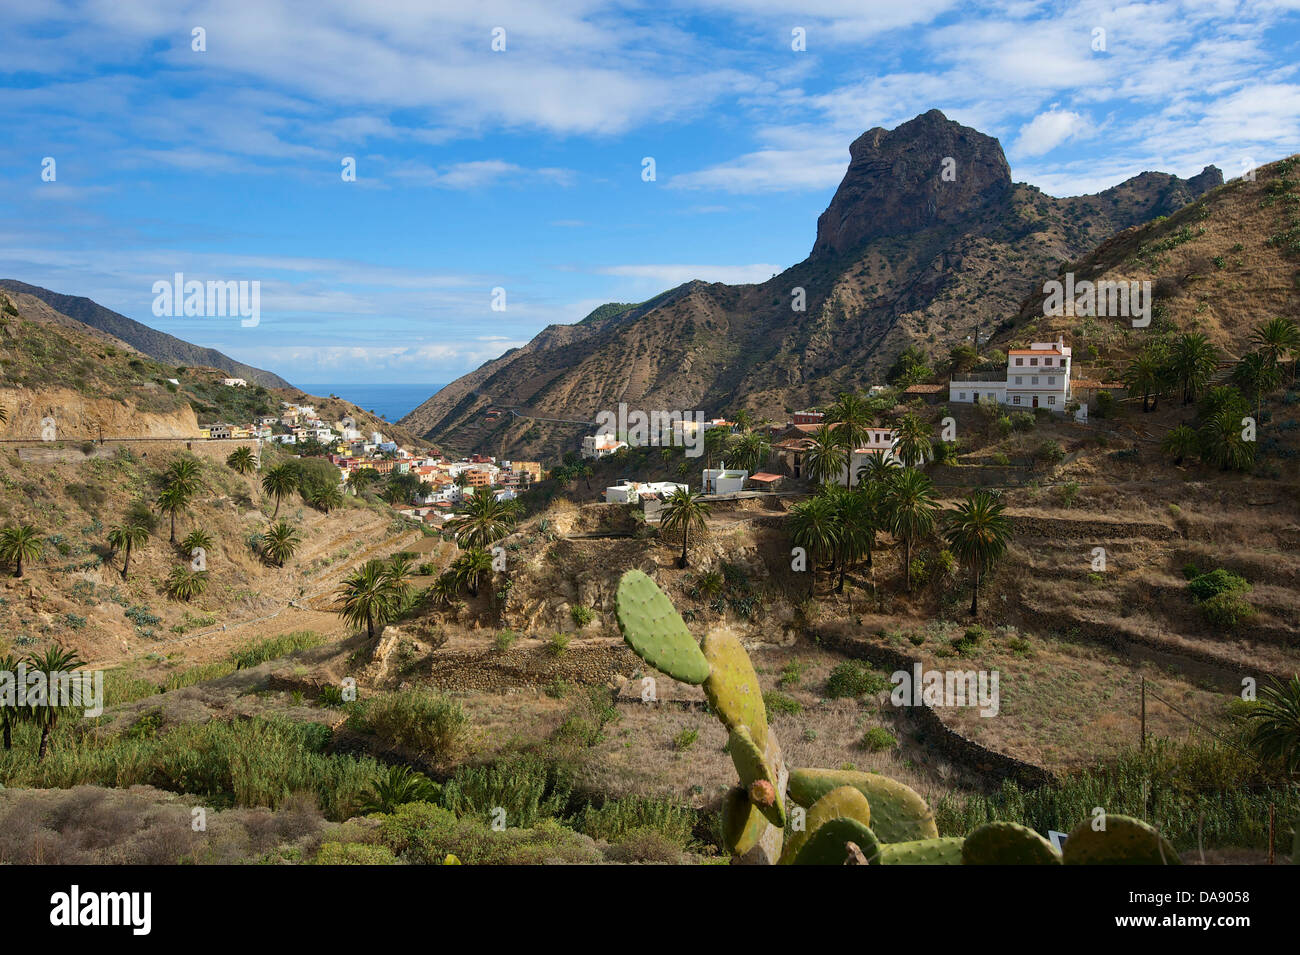 Kanarischen Inseln, Europa, Kanarische Inseln, La Gomera, Spanien, draußen, Tag, niemand, Vallehermoso, Blick auf die Stadt, Landschaft, Berg Stockfoto